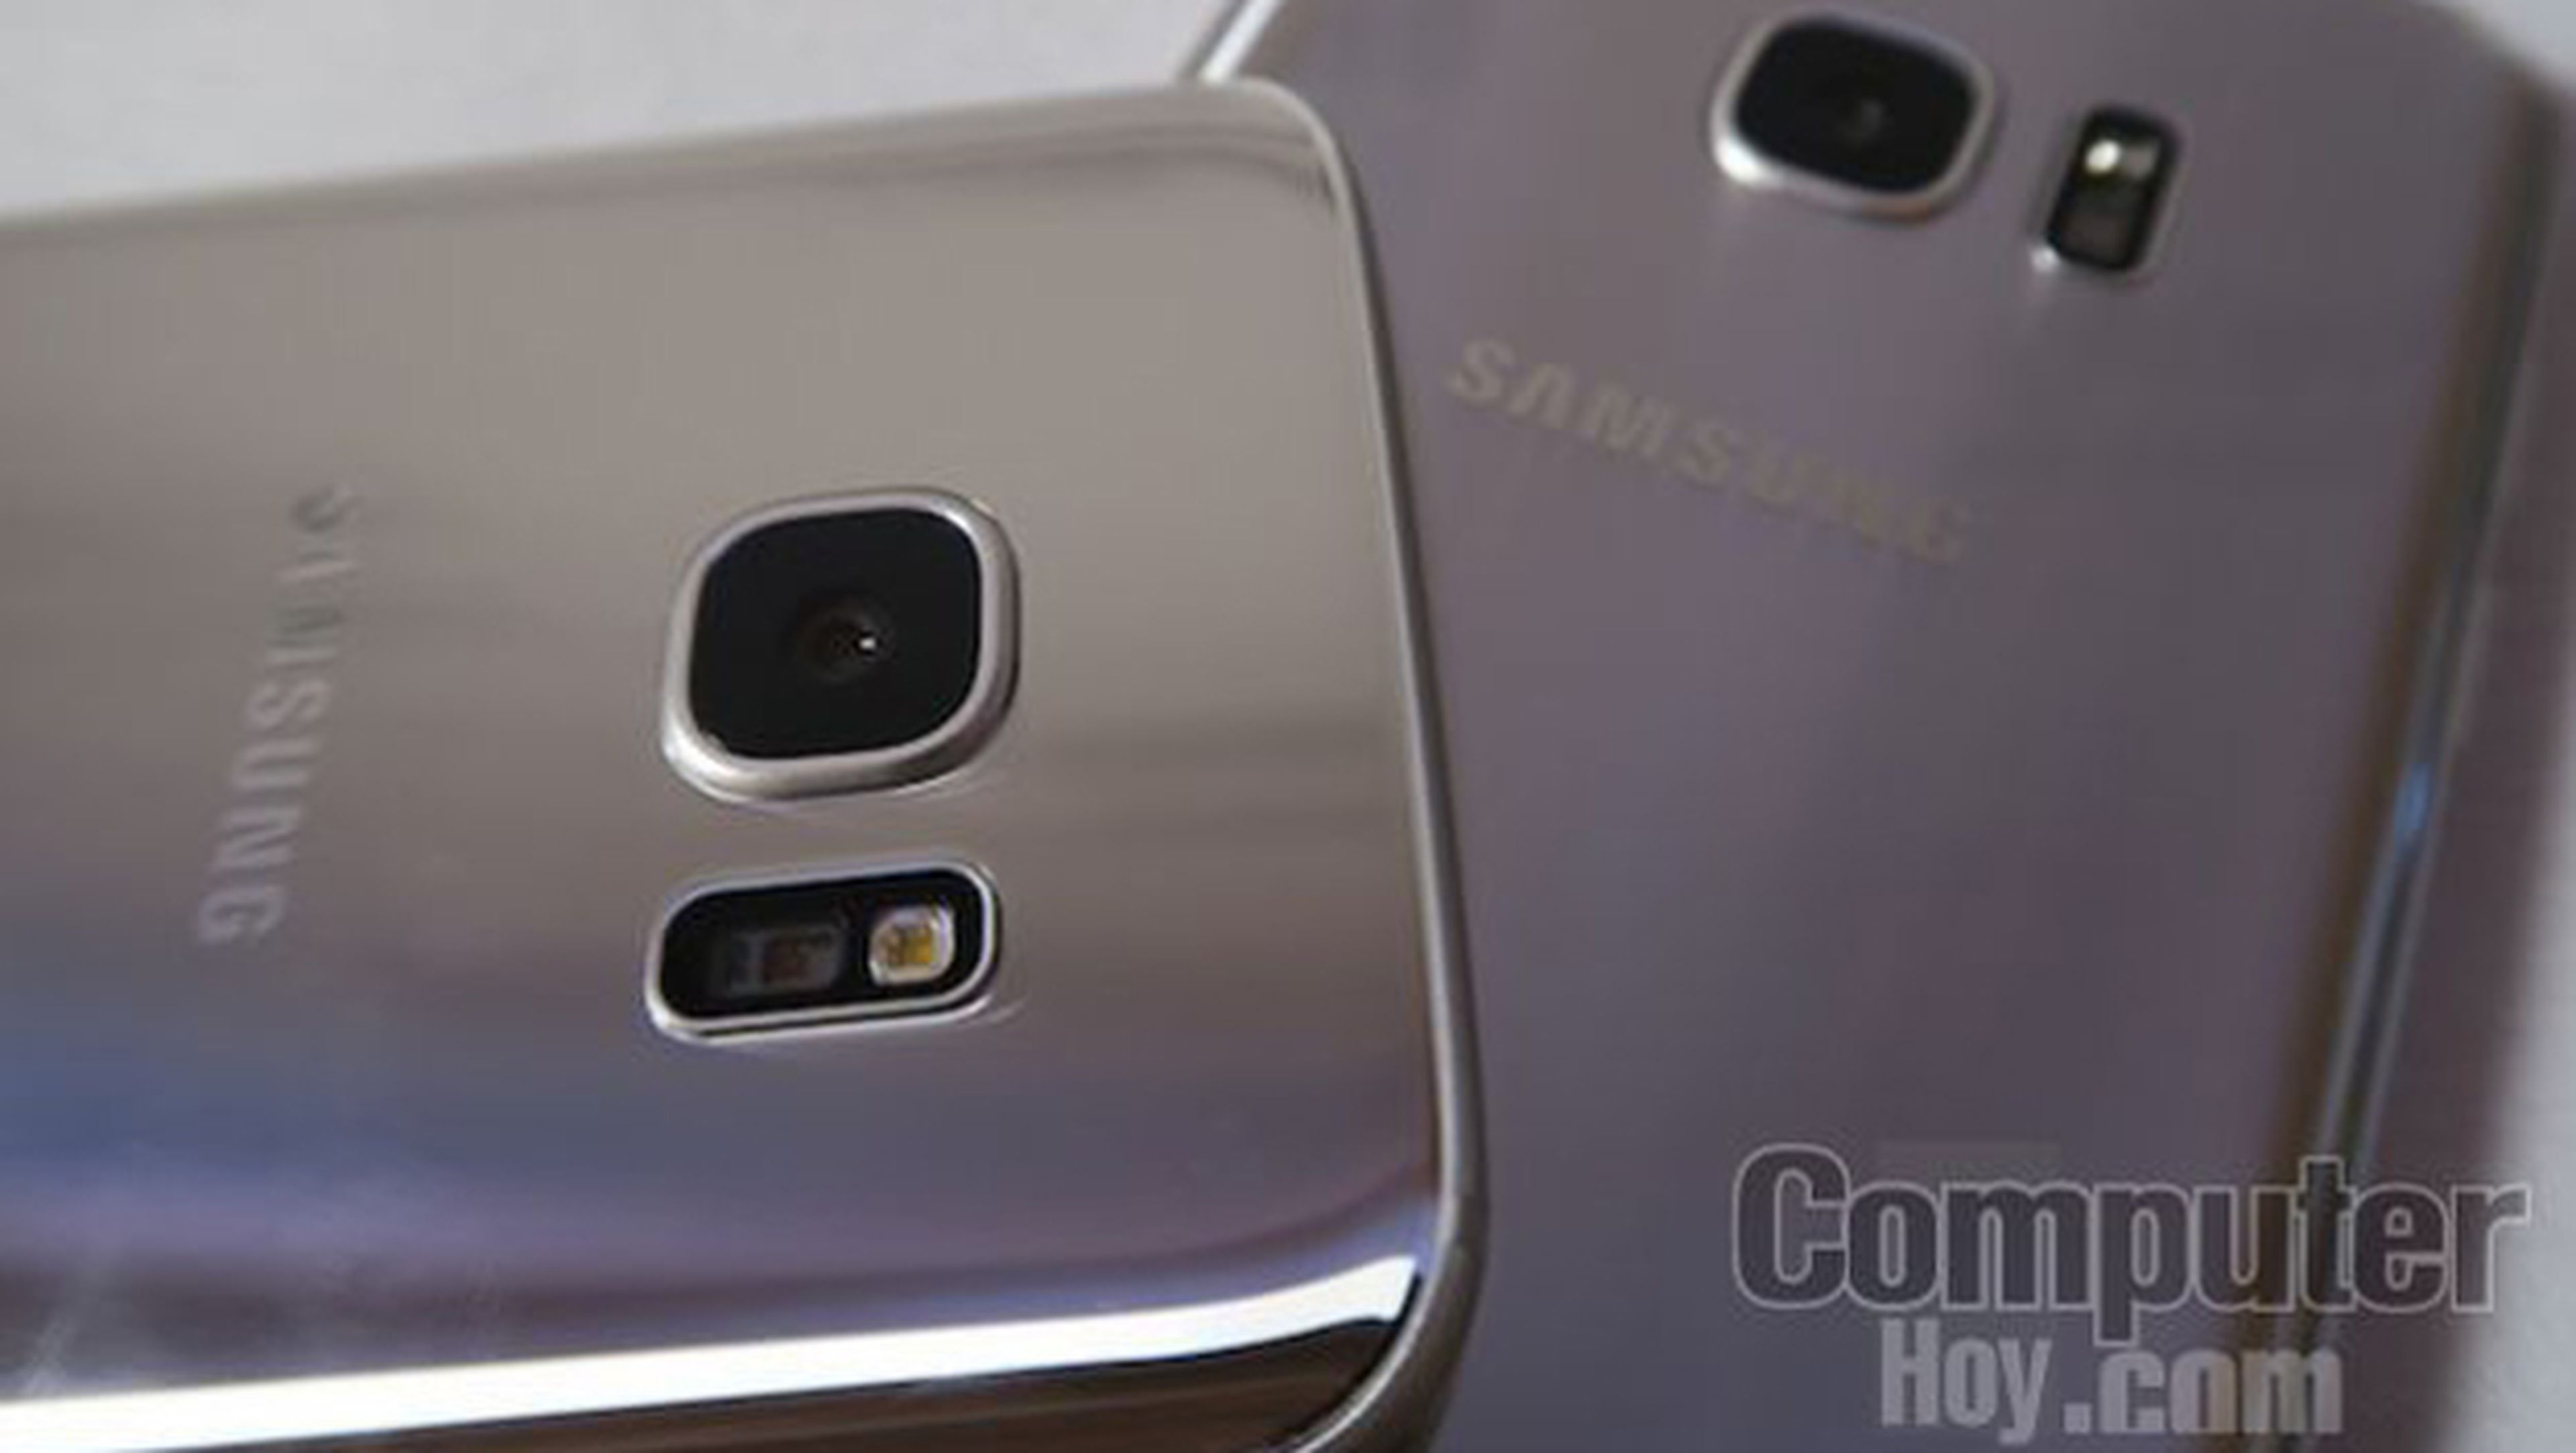 Resumen de las características del Samsung Galaxy S7